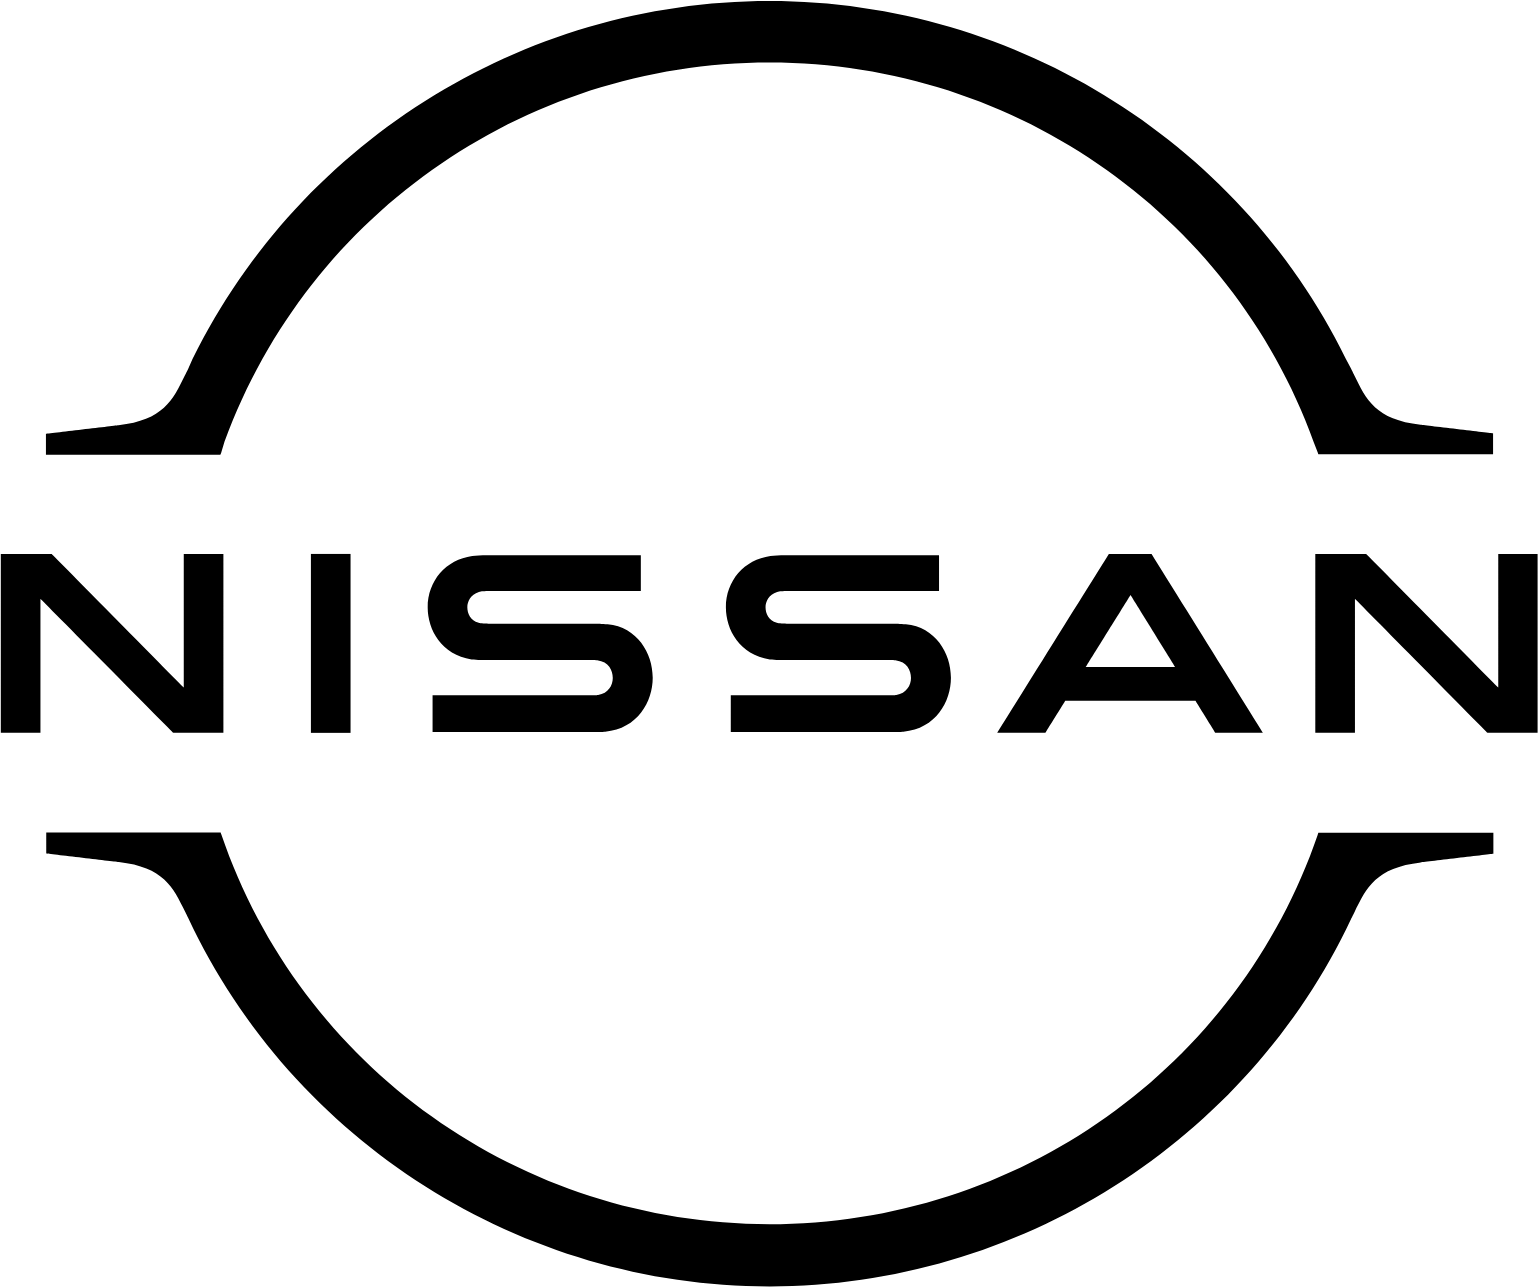 Nissan logo in transparent PNG format